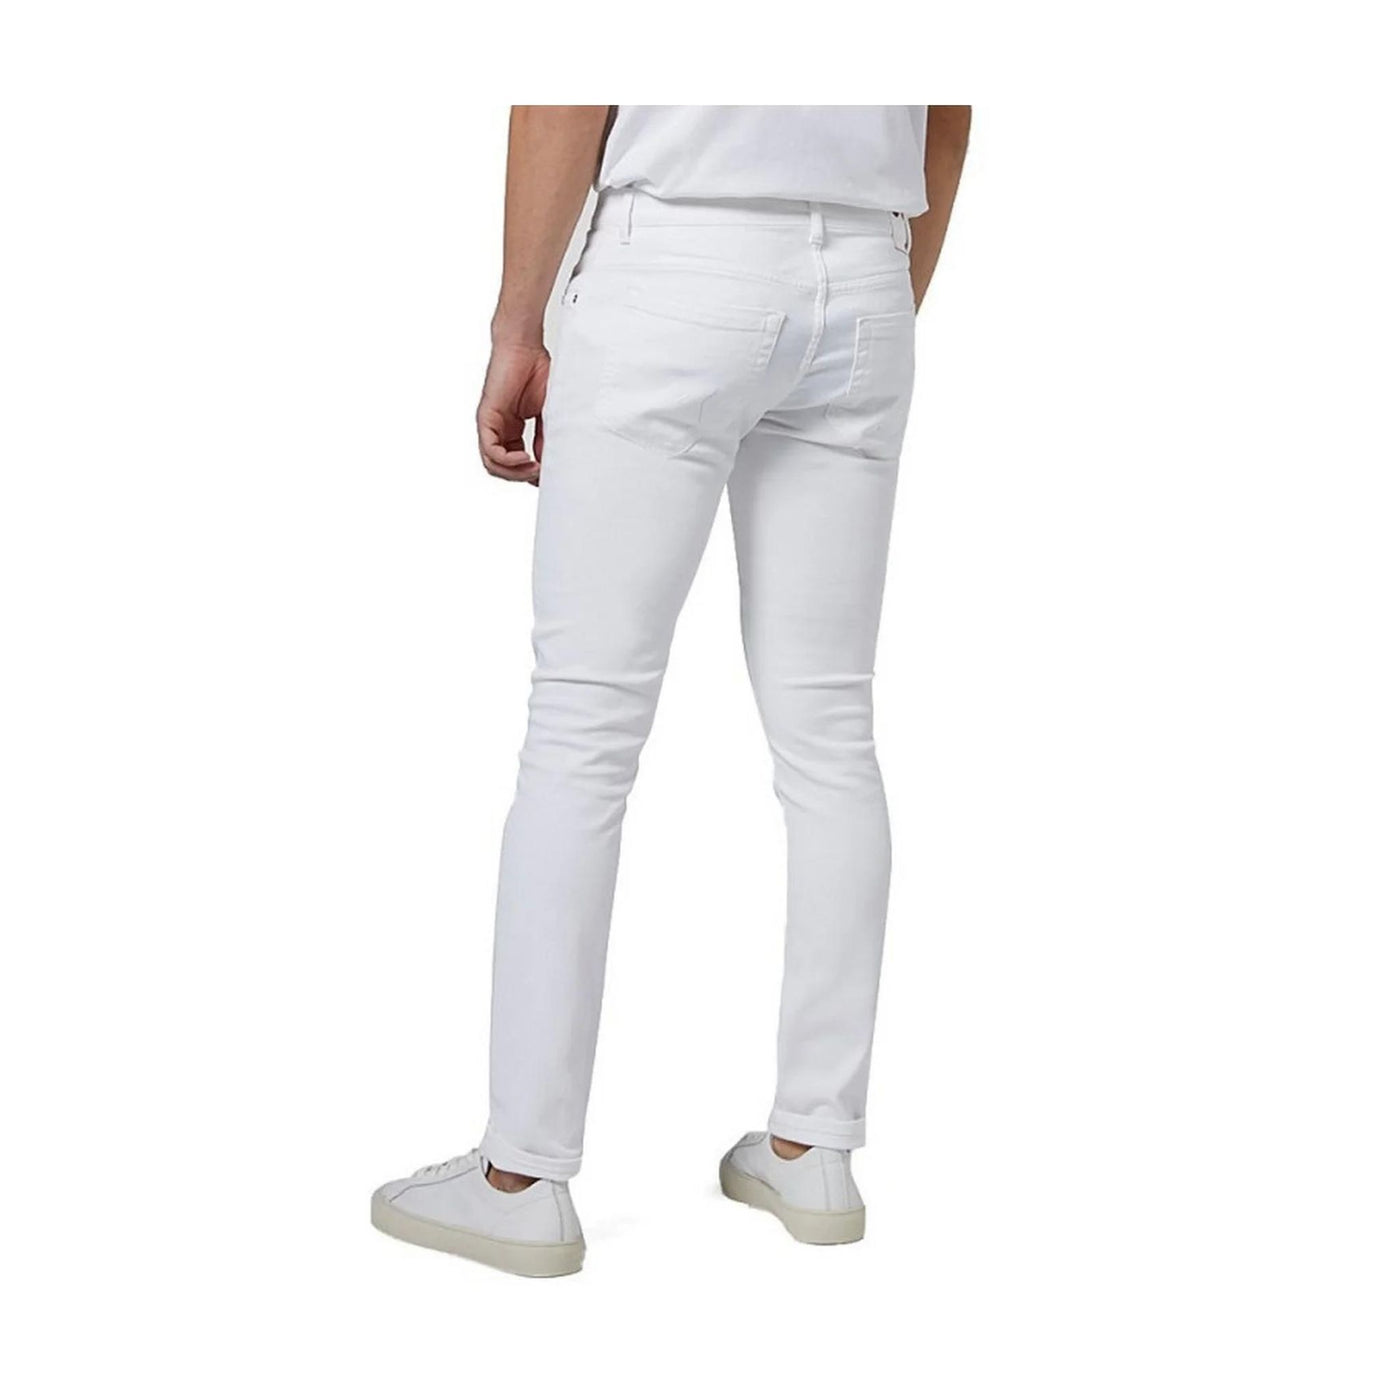 Jeans Uomo in cotone elasticizzato con cinque tasche